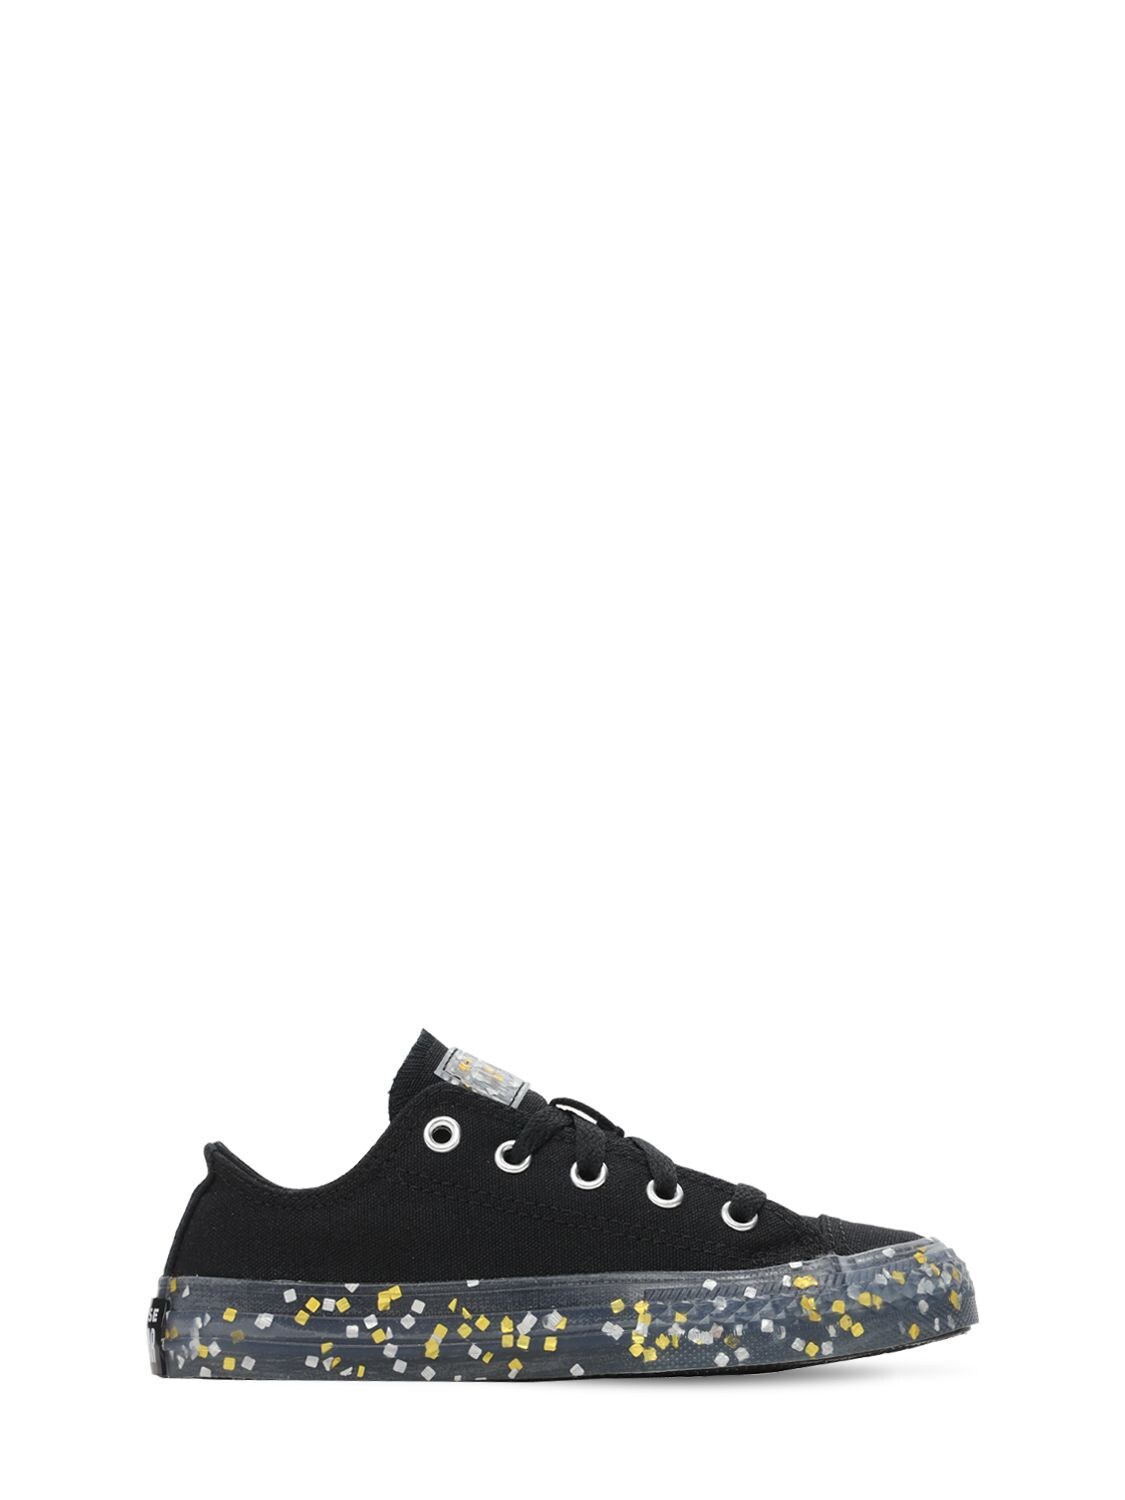 Converse Kids' Chuck Taylor Sneakers W/ Glitter In Black